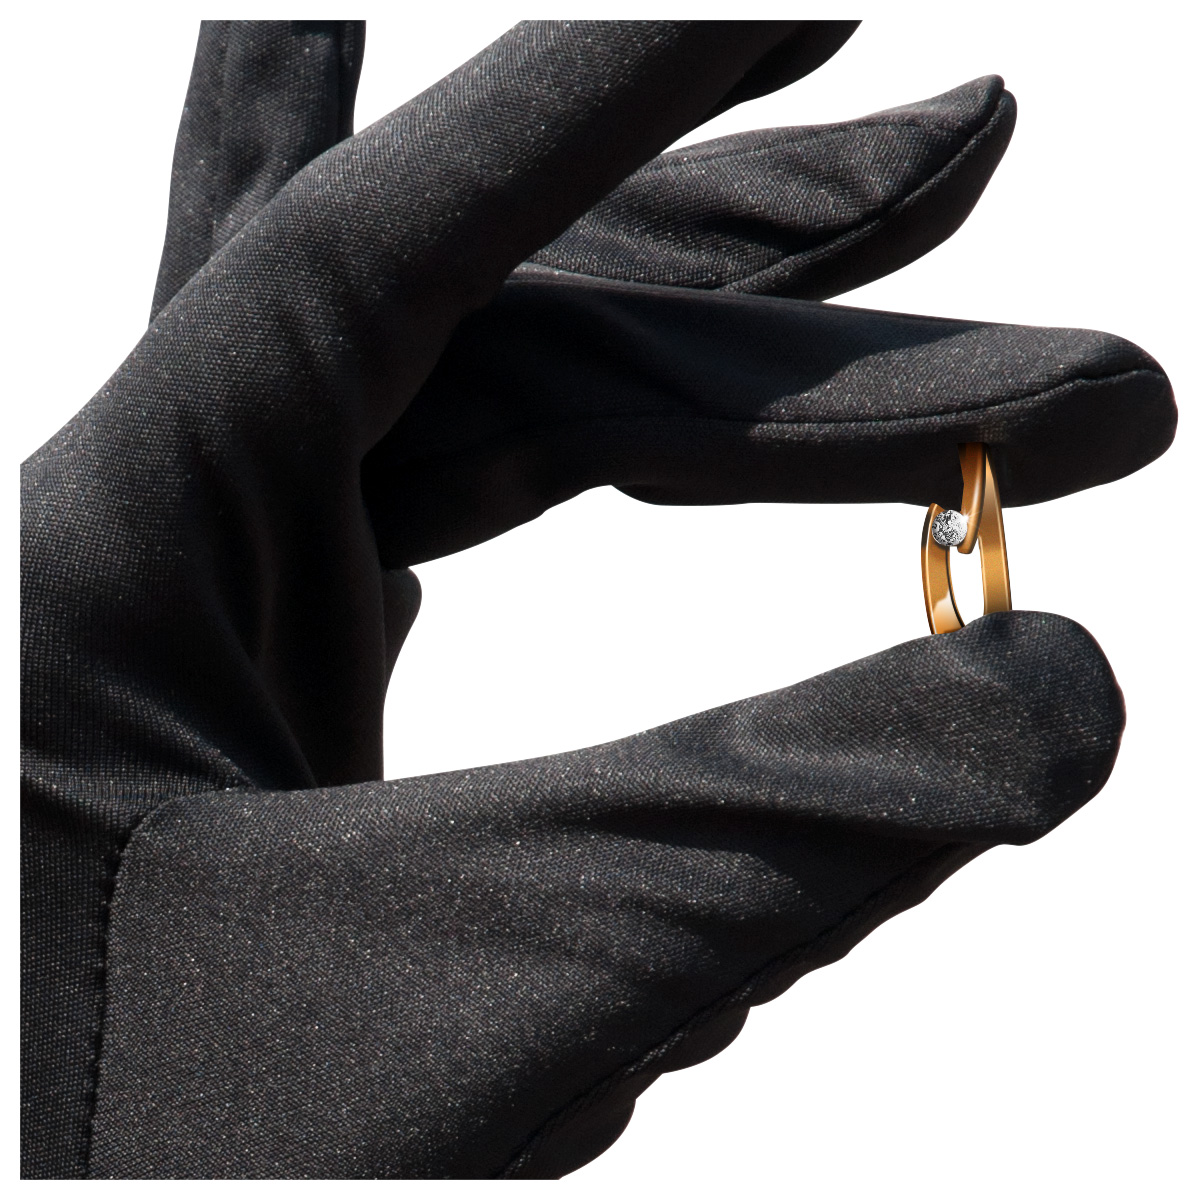 Mikrofaser Handschuh-Paar Haute Couture, schwarz, Größe S
